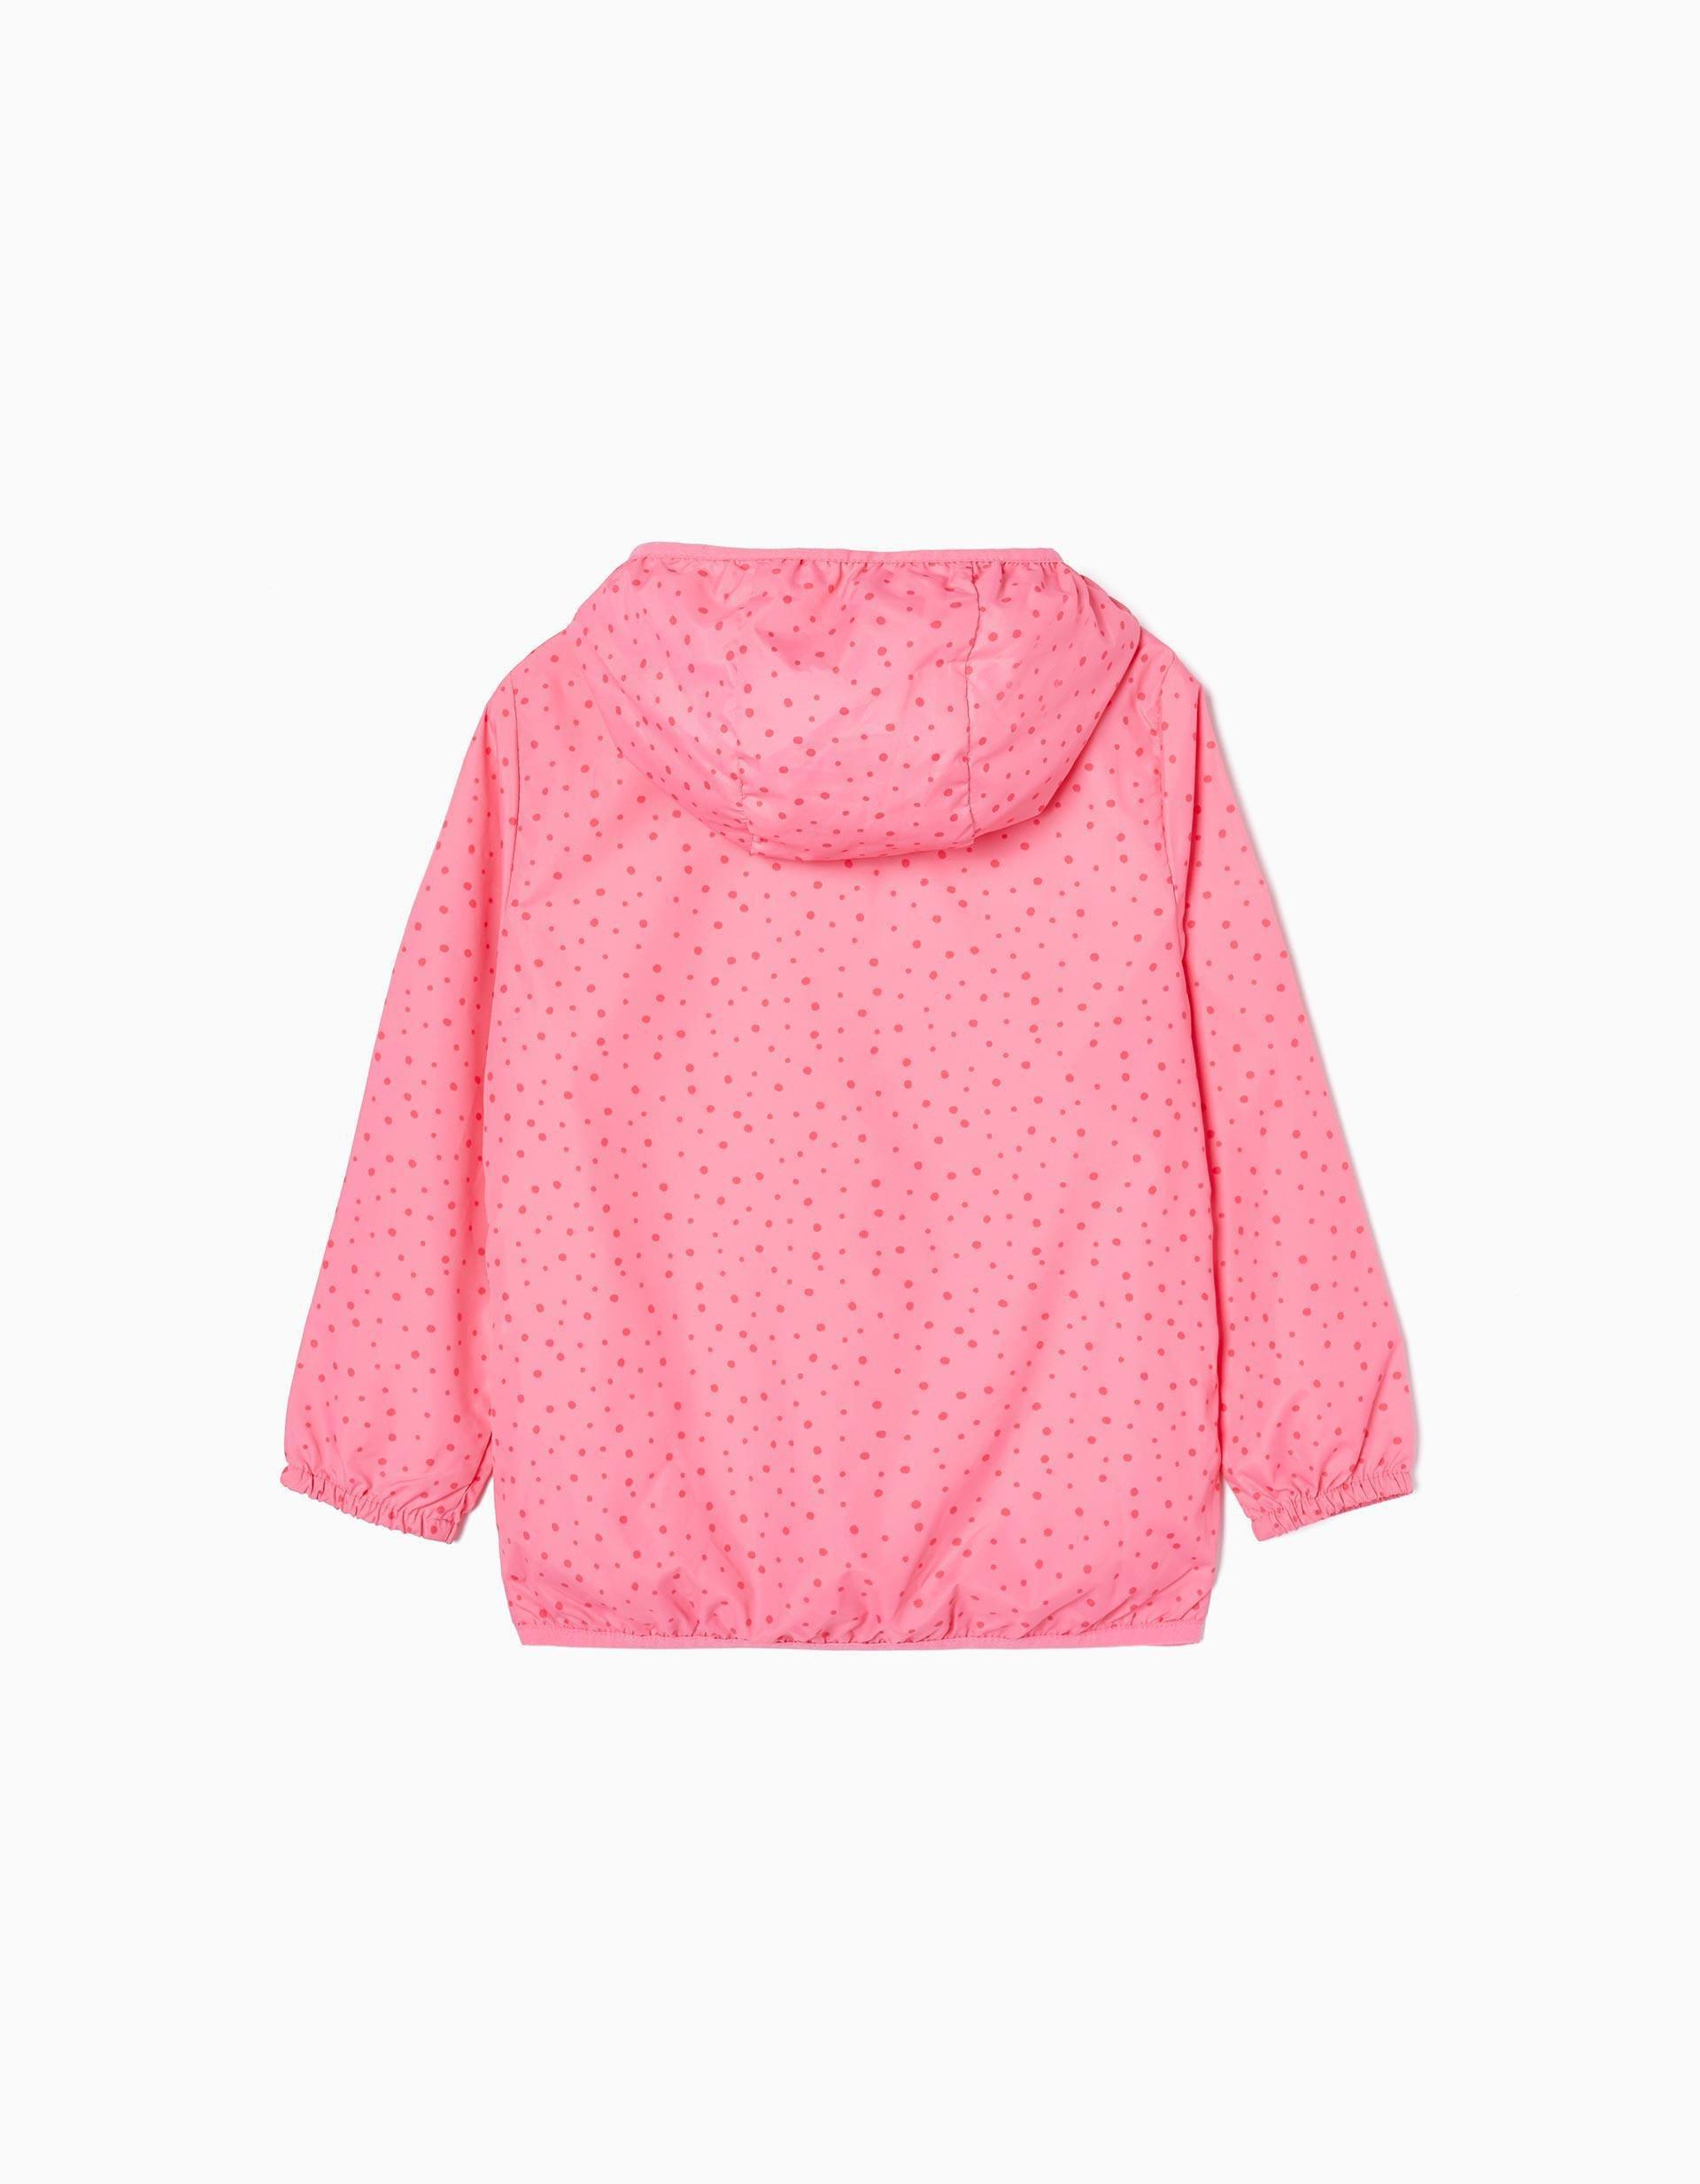 Zippy - Pink Hooded Windbreak Jacket, Kids Girls